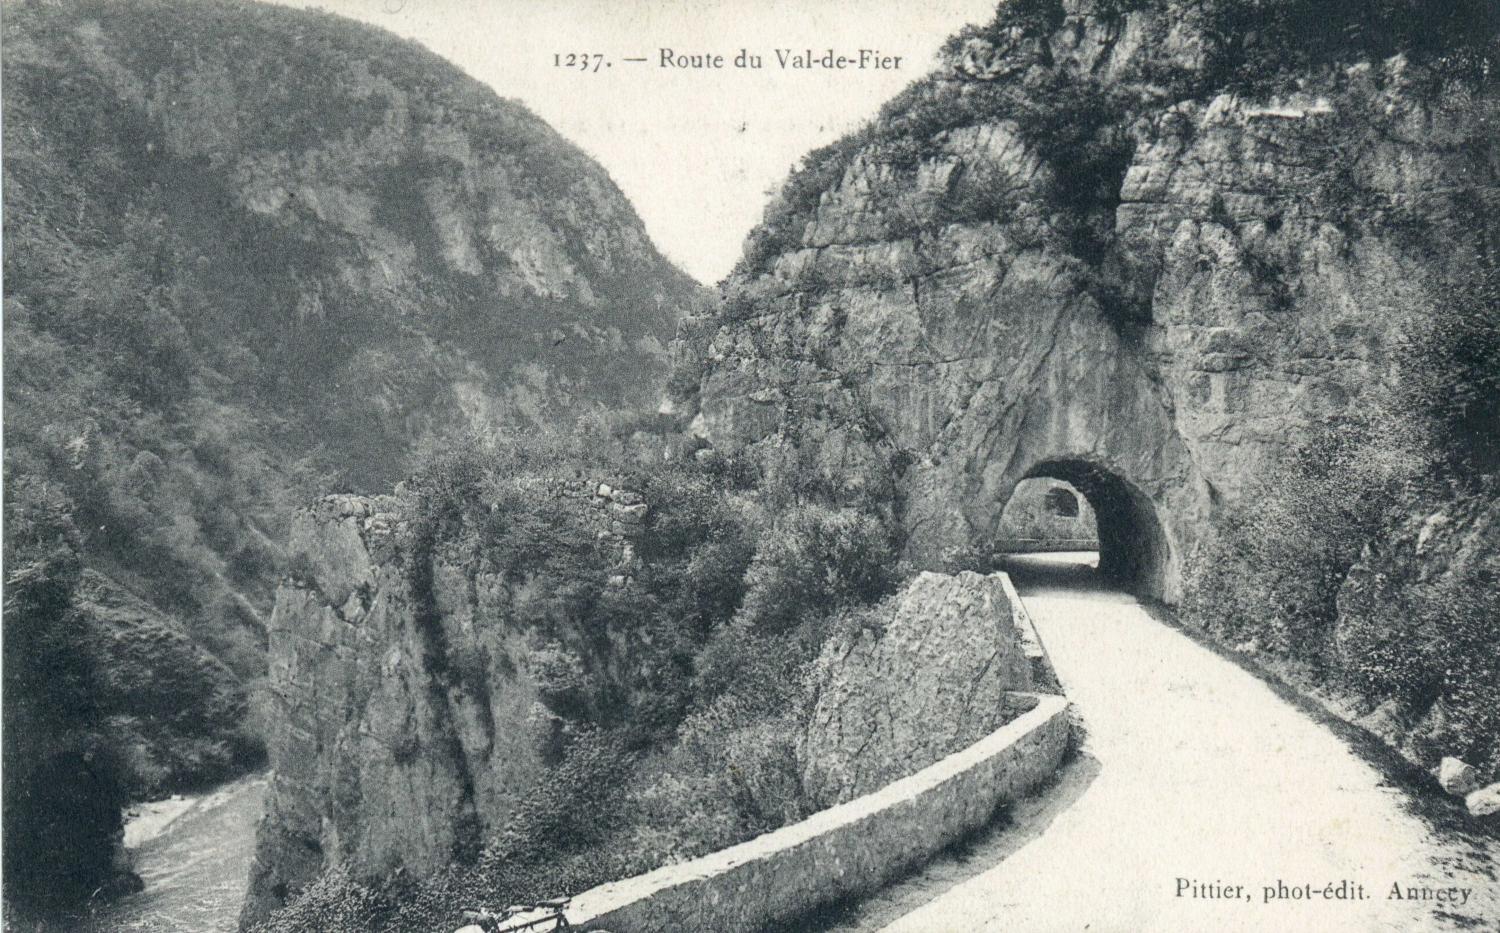 Route du Val-de-Fier